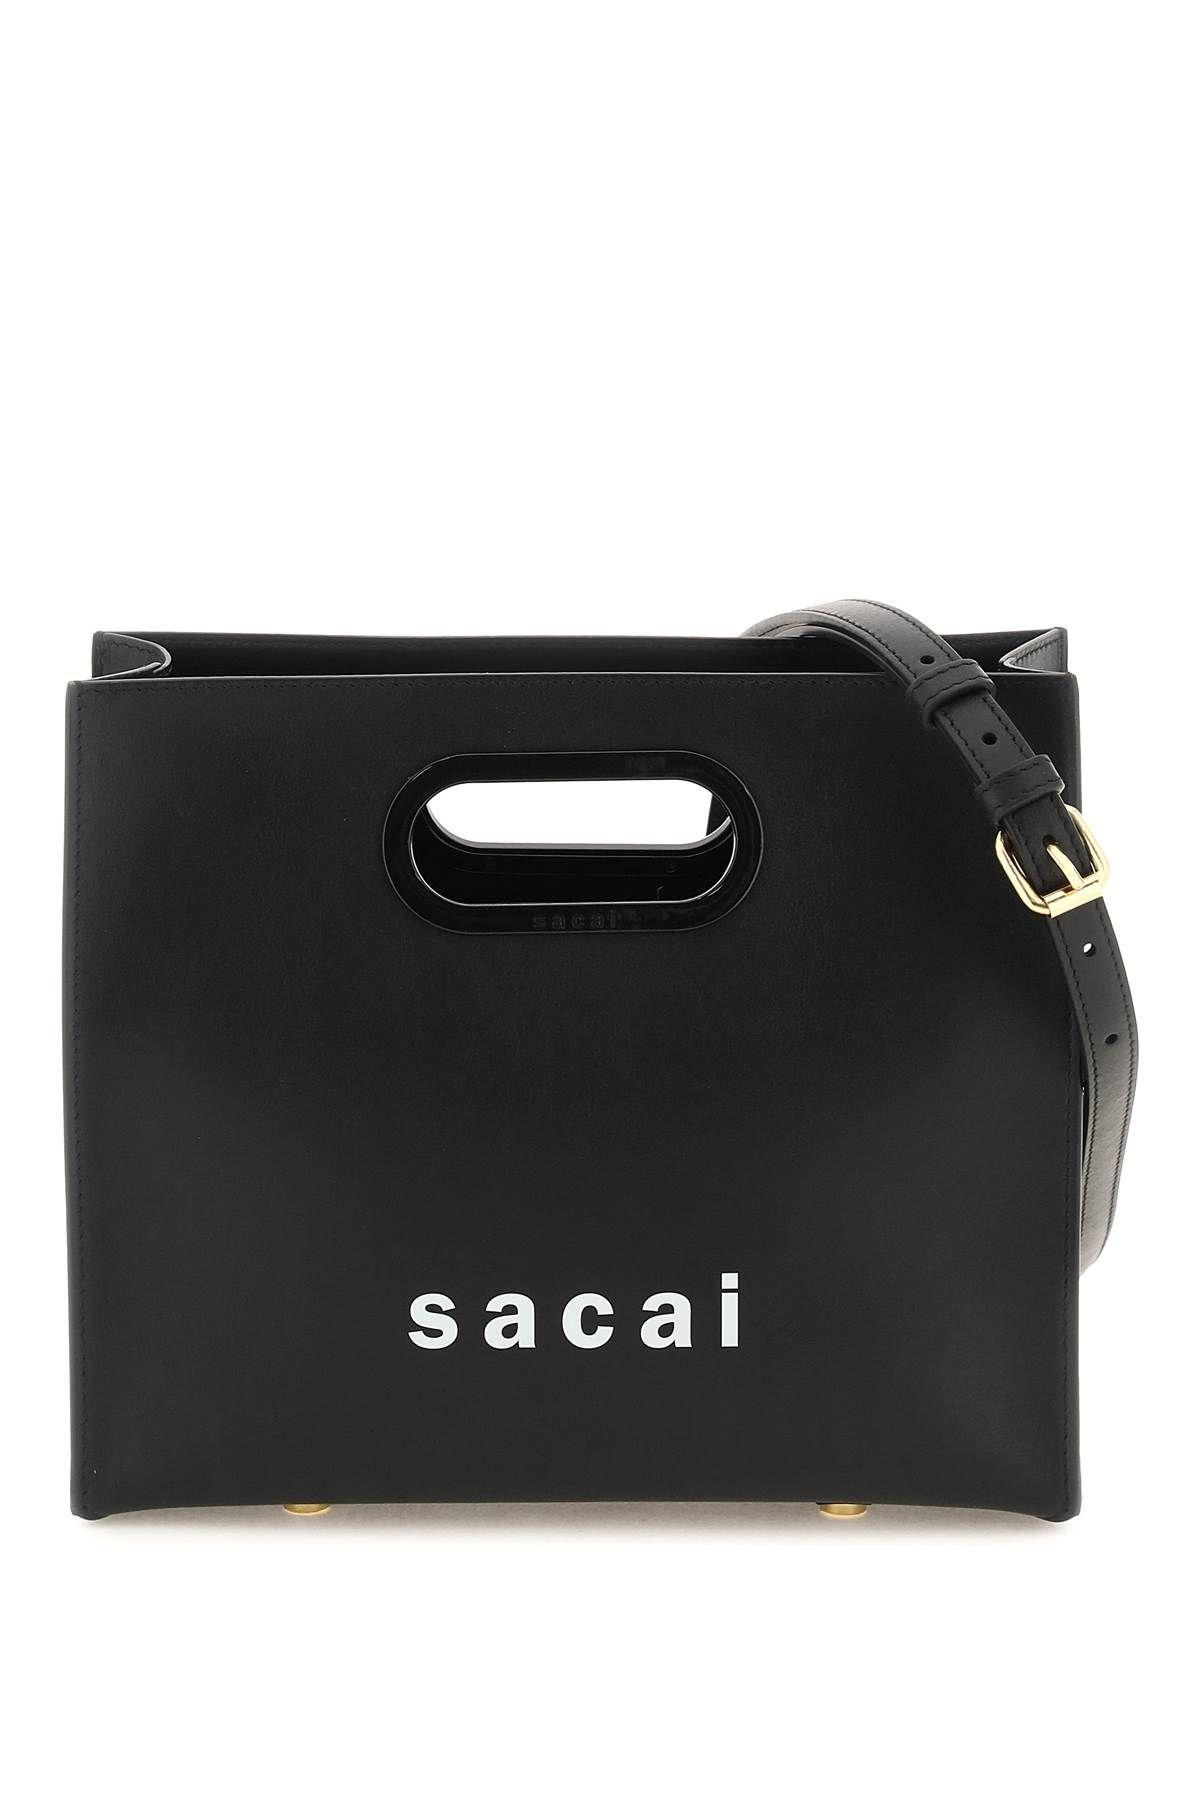 Sacai Leather Small Shopper Bag